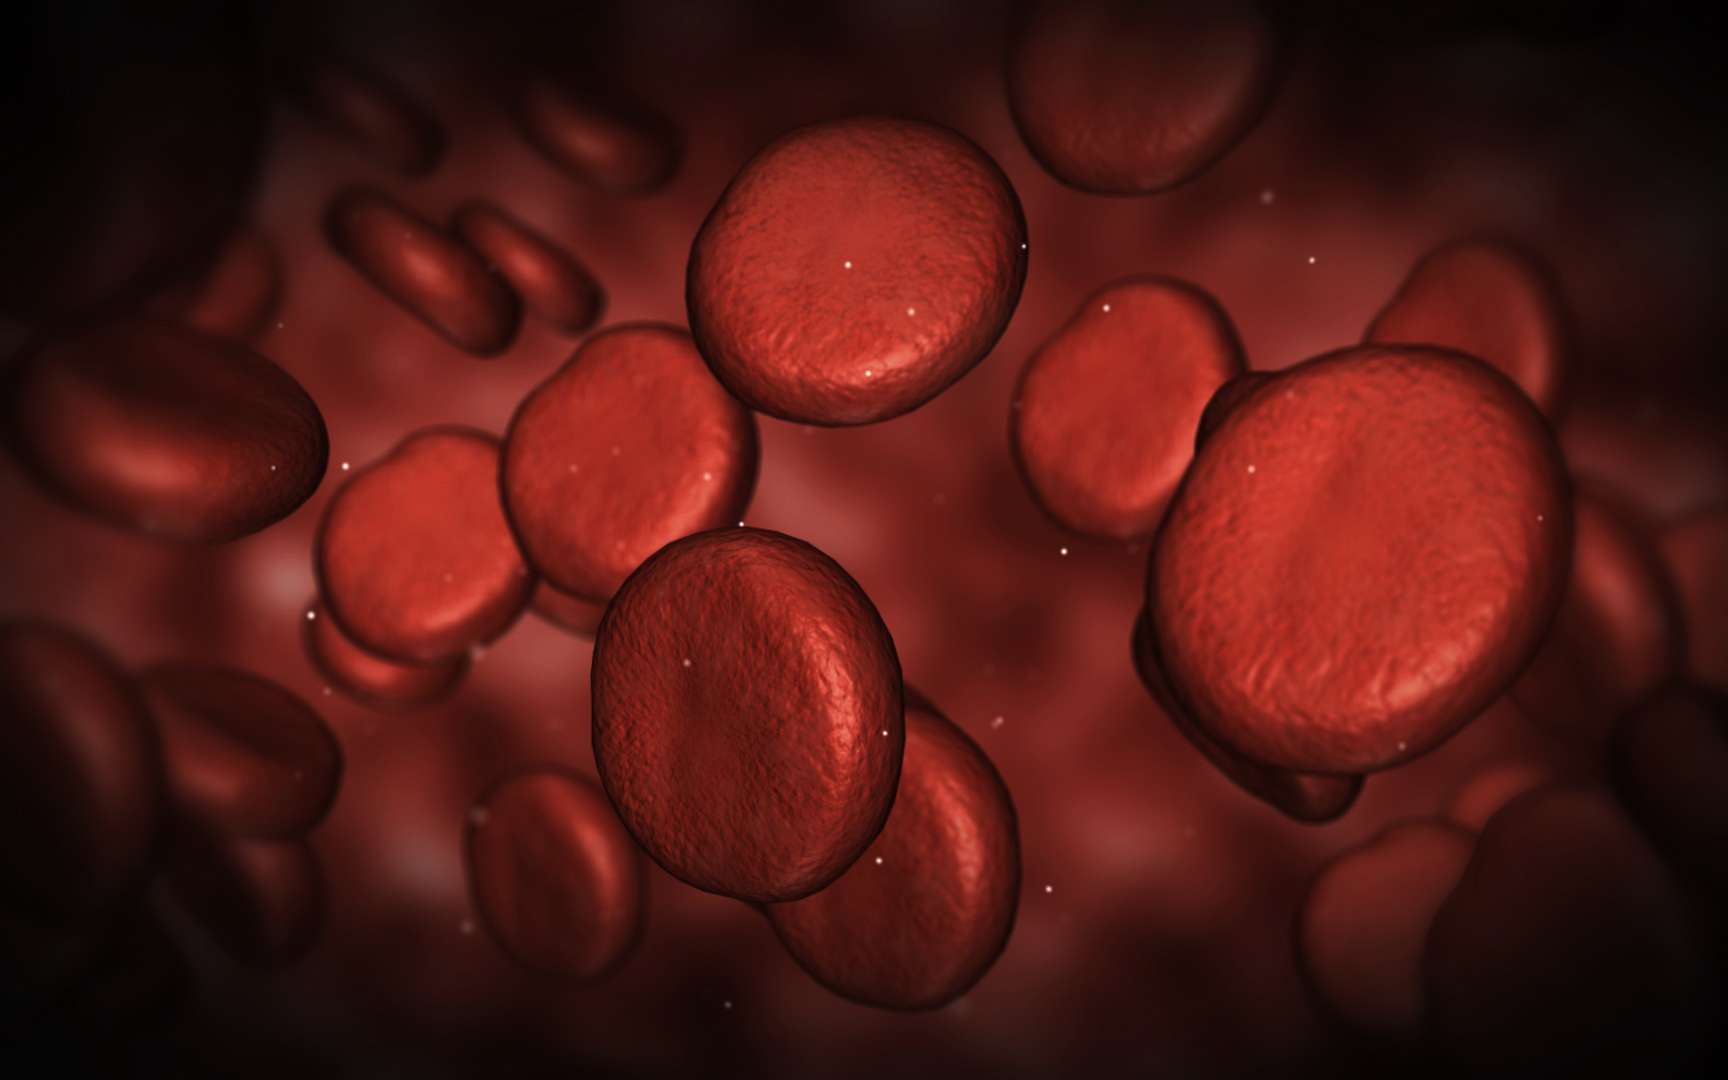 Le sang, qui se compose de plasma et de cellules, contiendrait des éléments capables de contribuer au maintien de la jeunesse. © Gothicpagan, deviantart.com, cc by nc nd 3.0